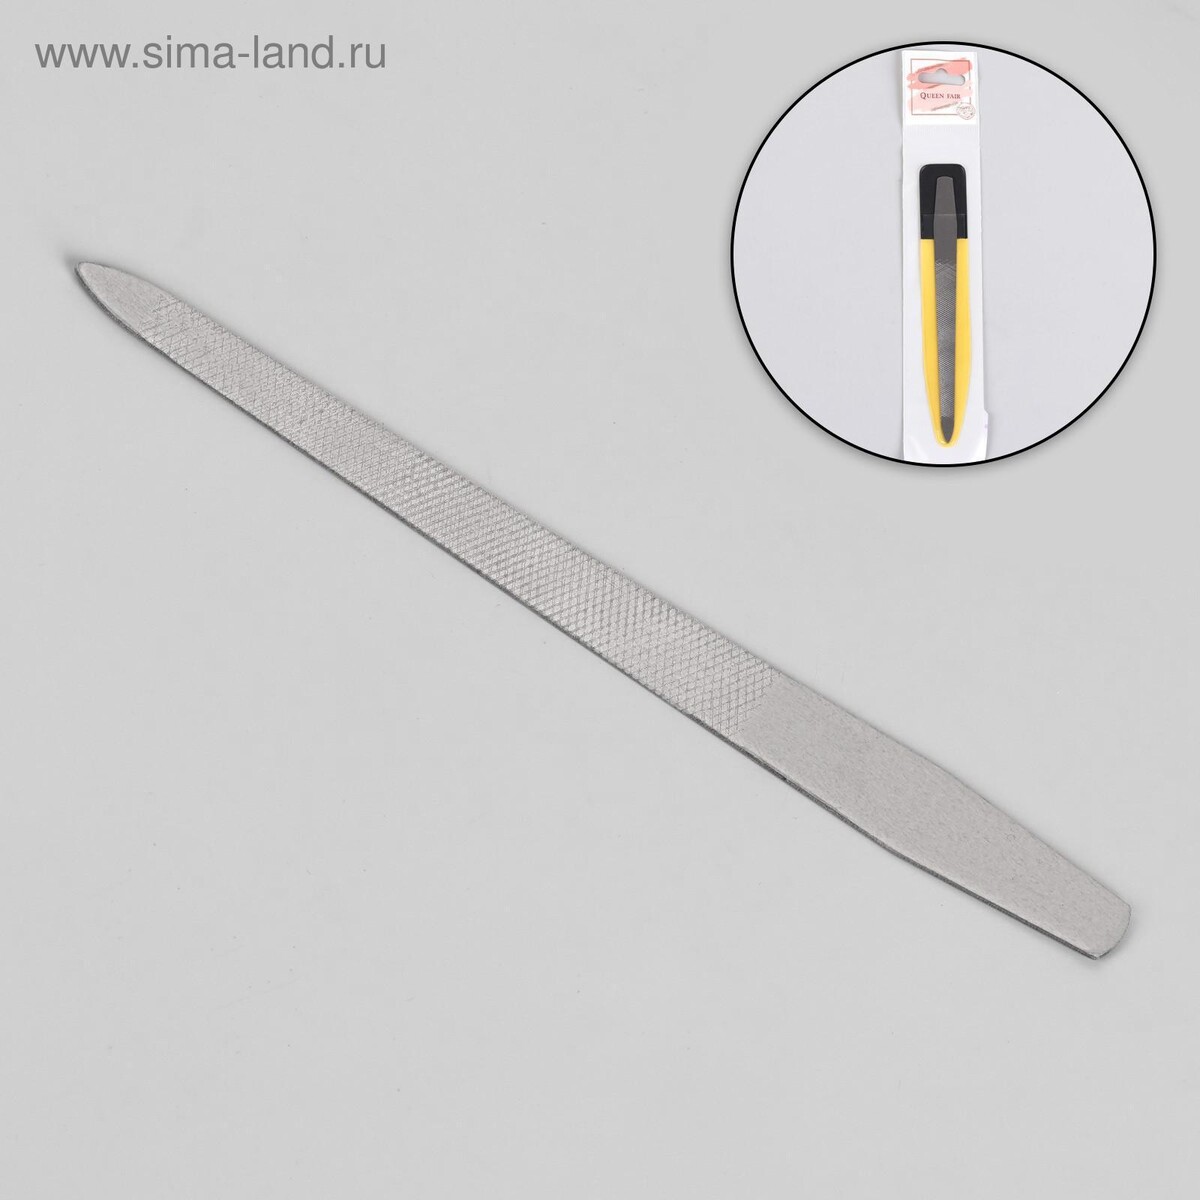 Пилка металлическая для ногтей, 13,5 см, в чехле, цвет серебристый пилка металлическая для ногтей прорезиненная ручка 17 см серебристый